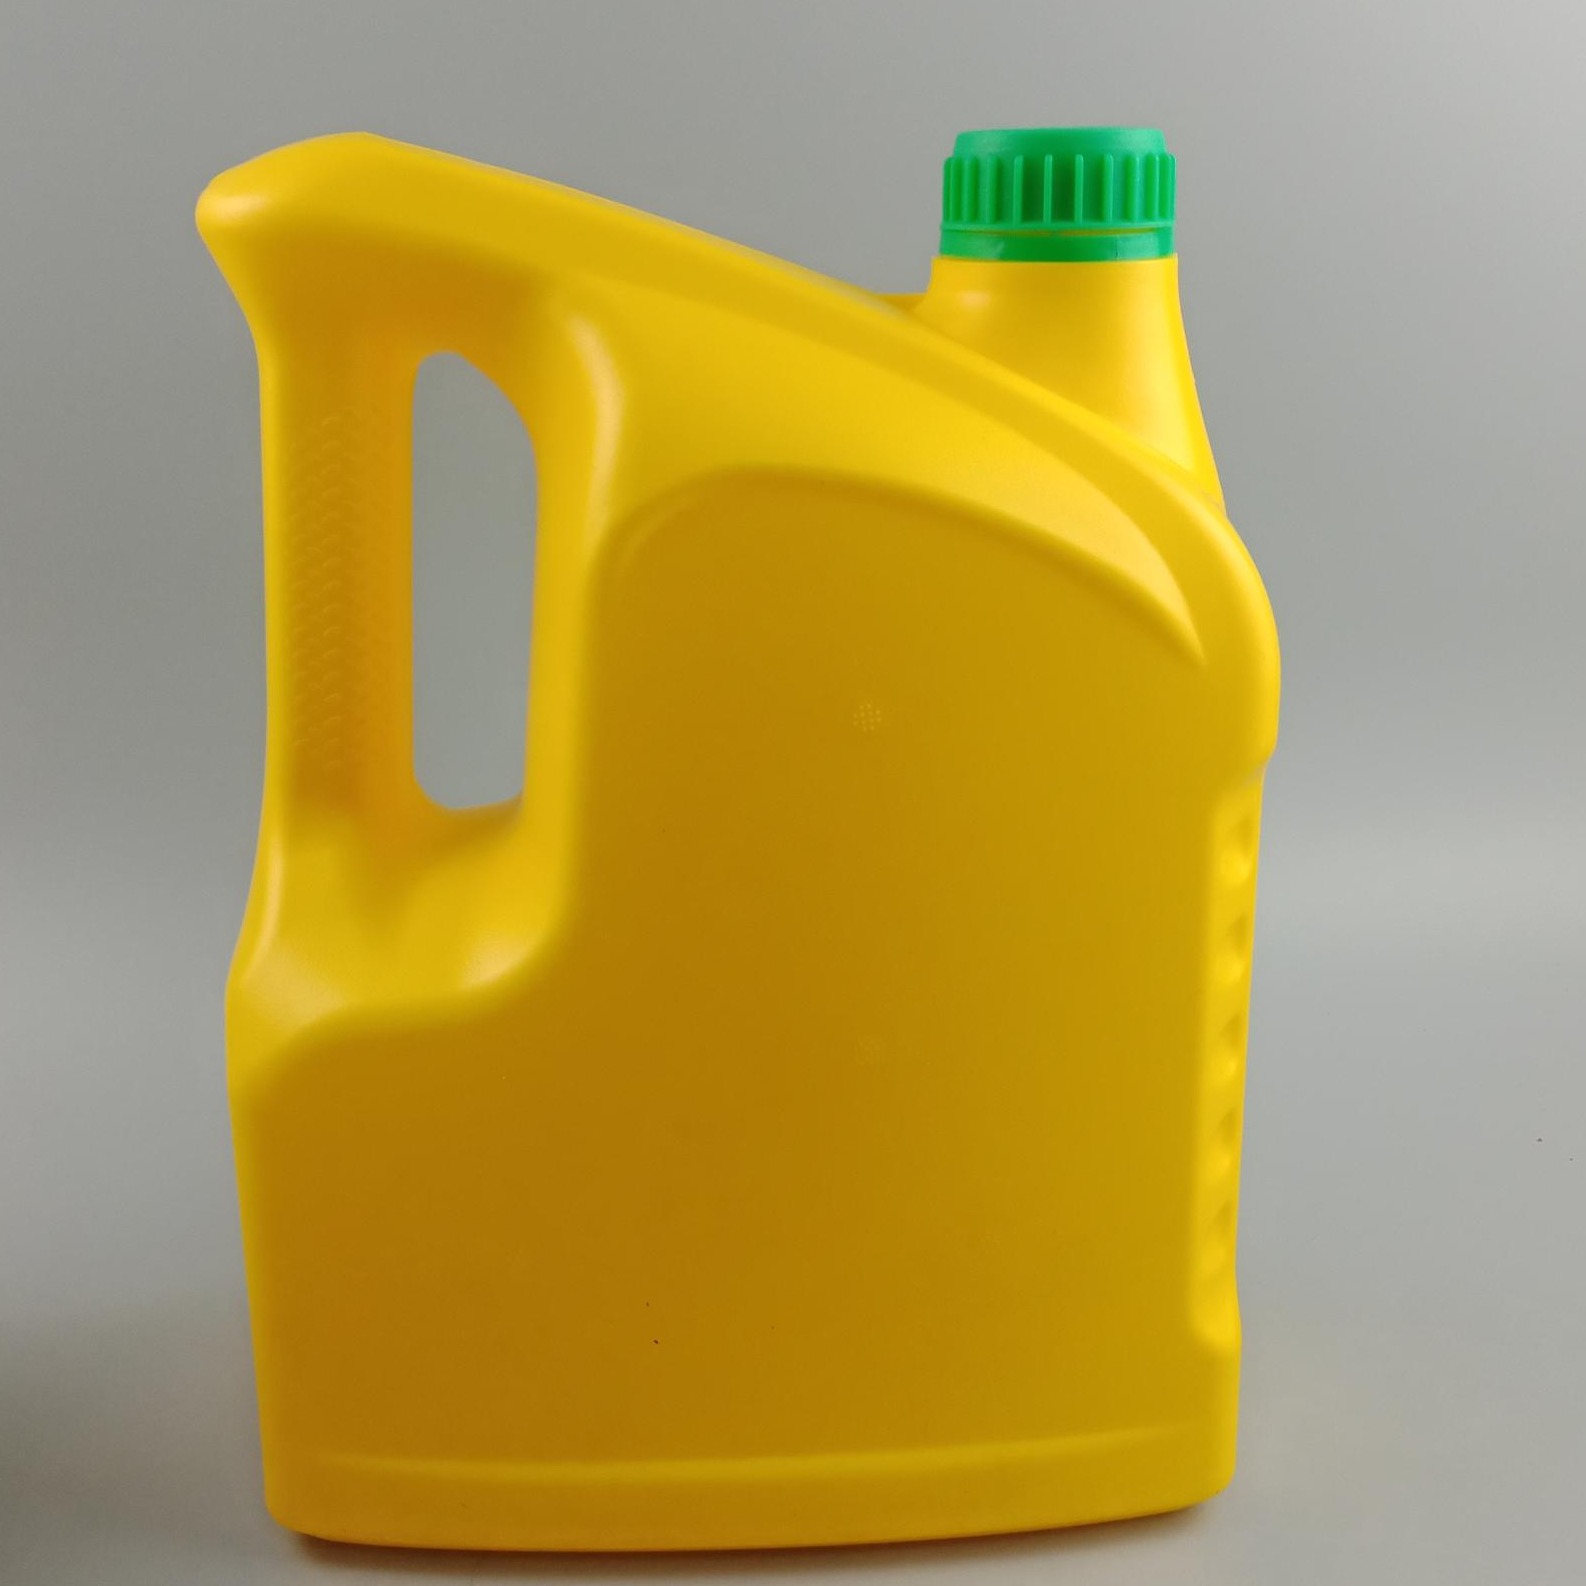 钜名生产 塑料瓶 4L 机油壶 机油桶 机油瓶 车用尿素桶 防冻液桶 2l 机油壶 设计瓶型 模具生产